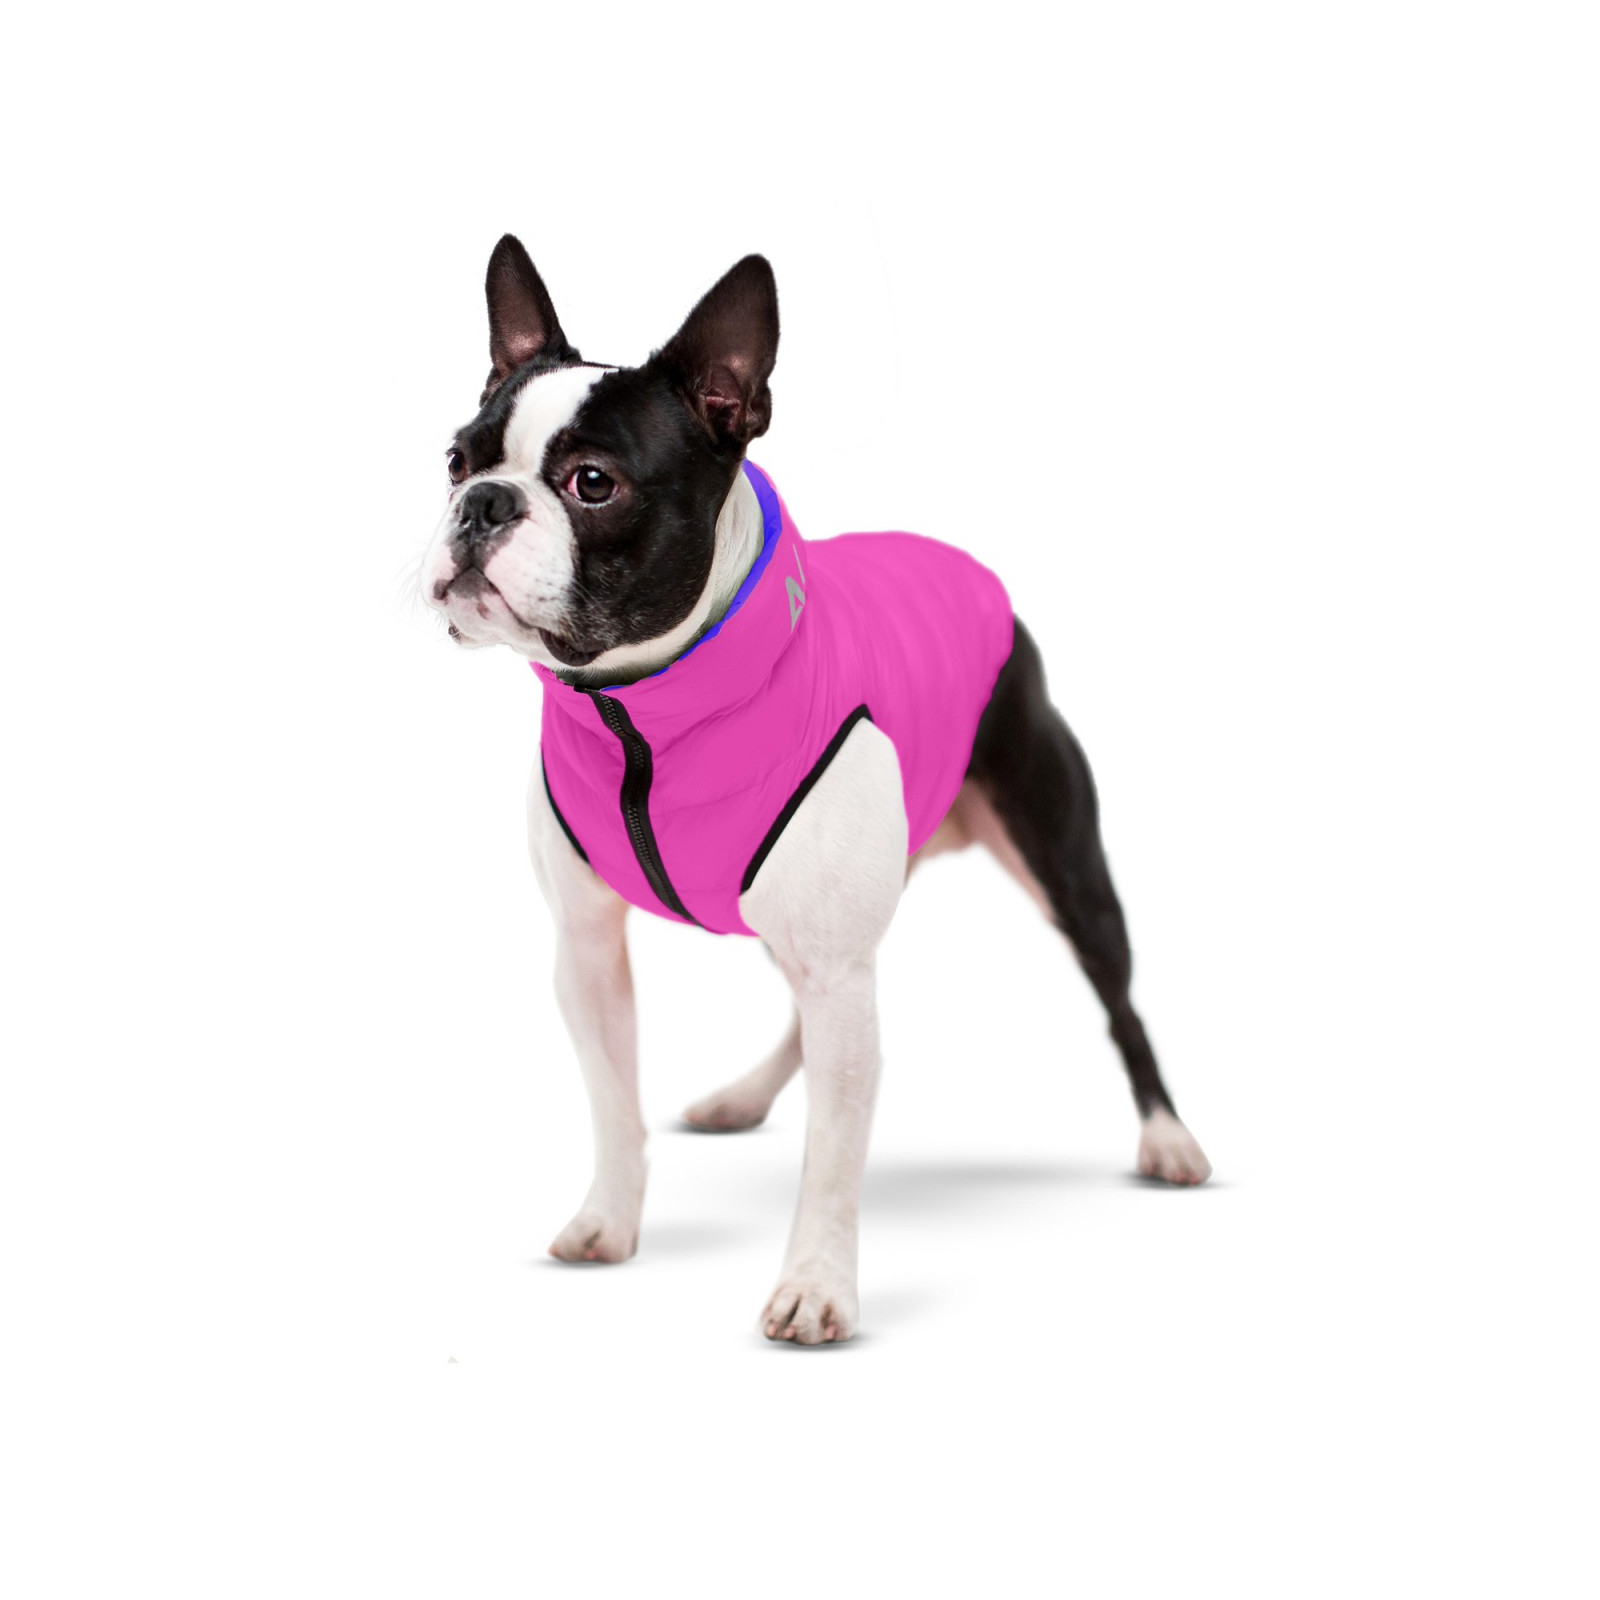 Курточка для животных Airy Vest двусторонняя S 35 фиолетово-розовая (1585) изображение 2